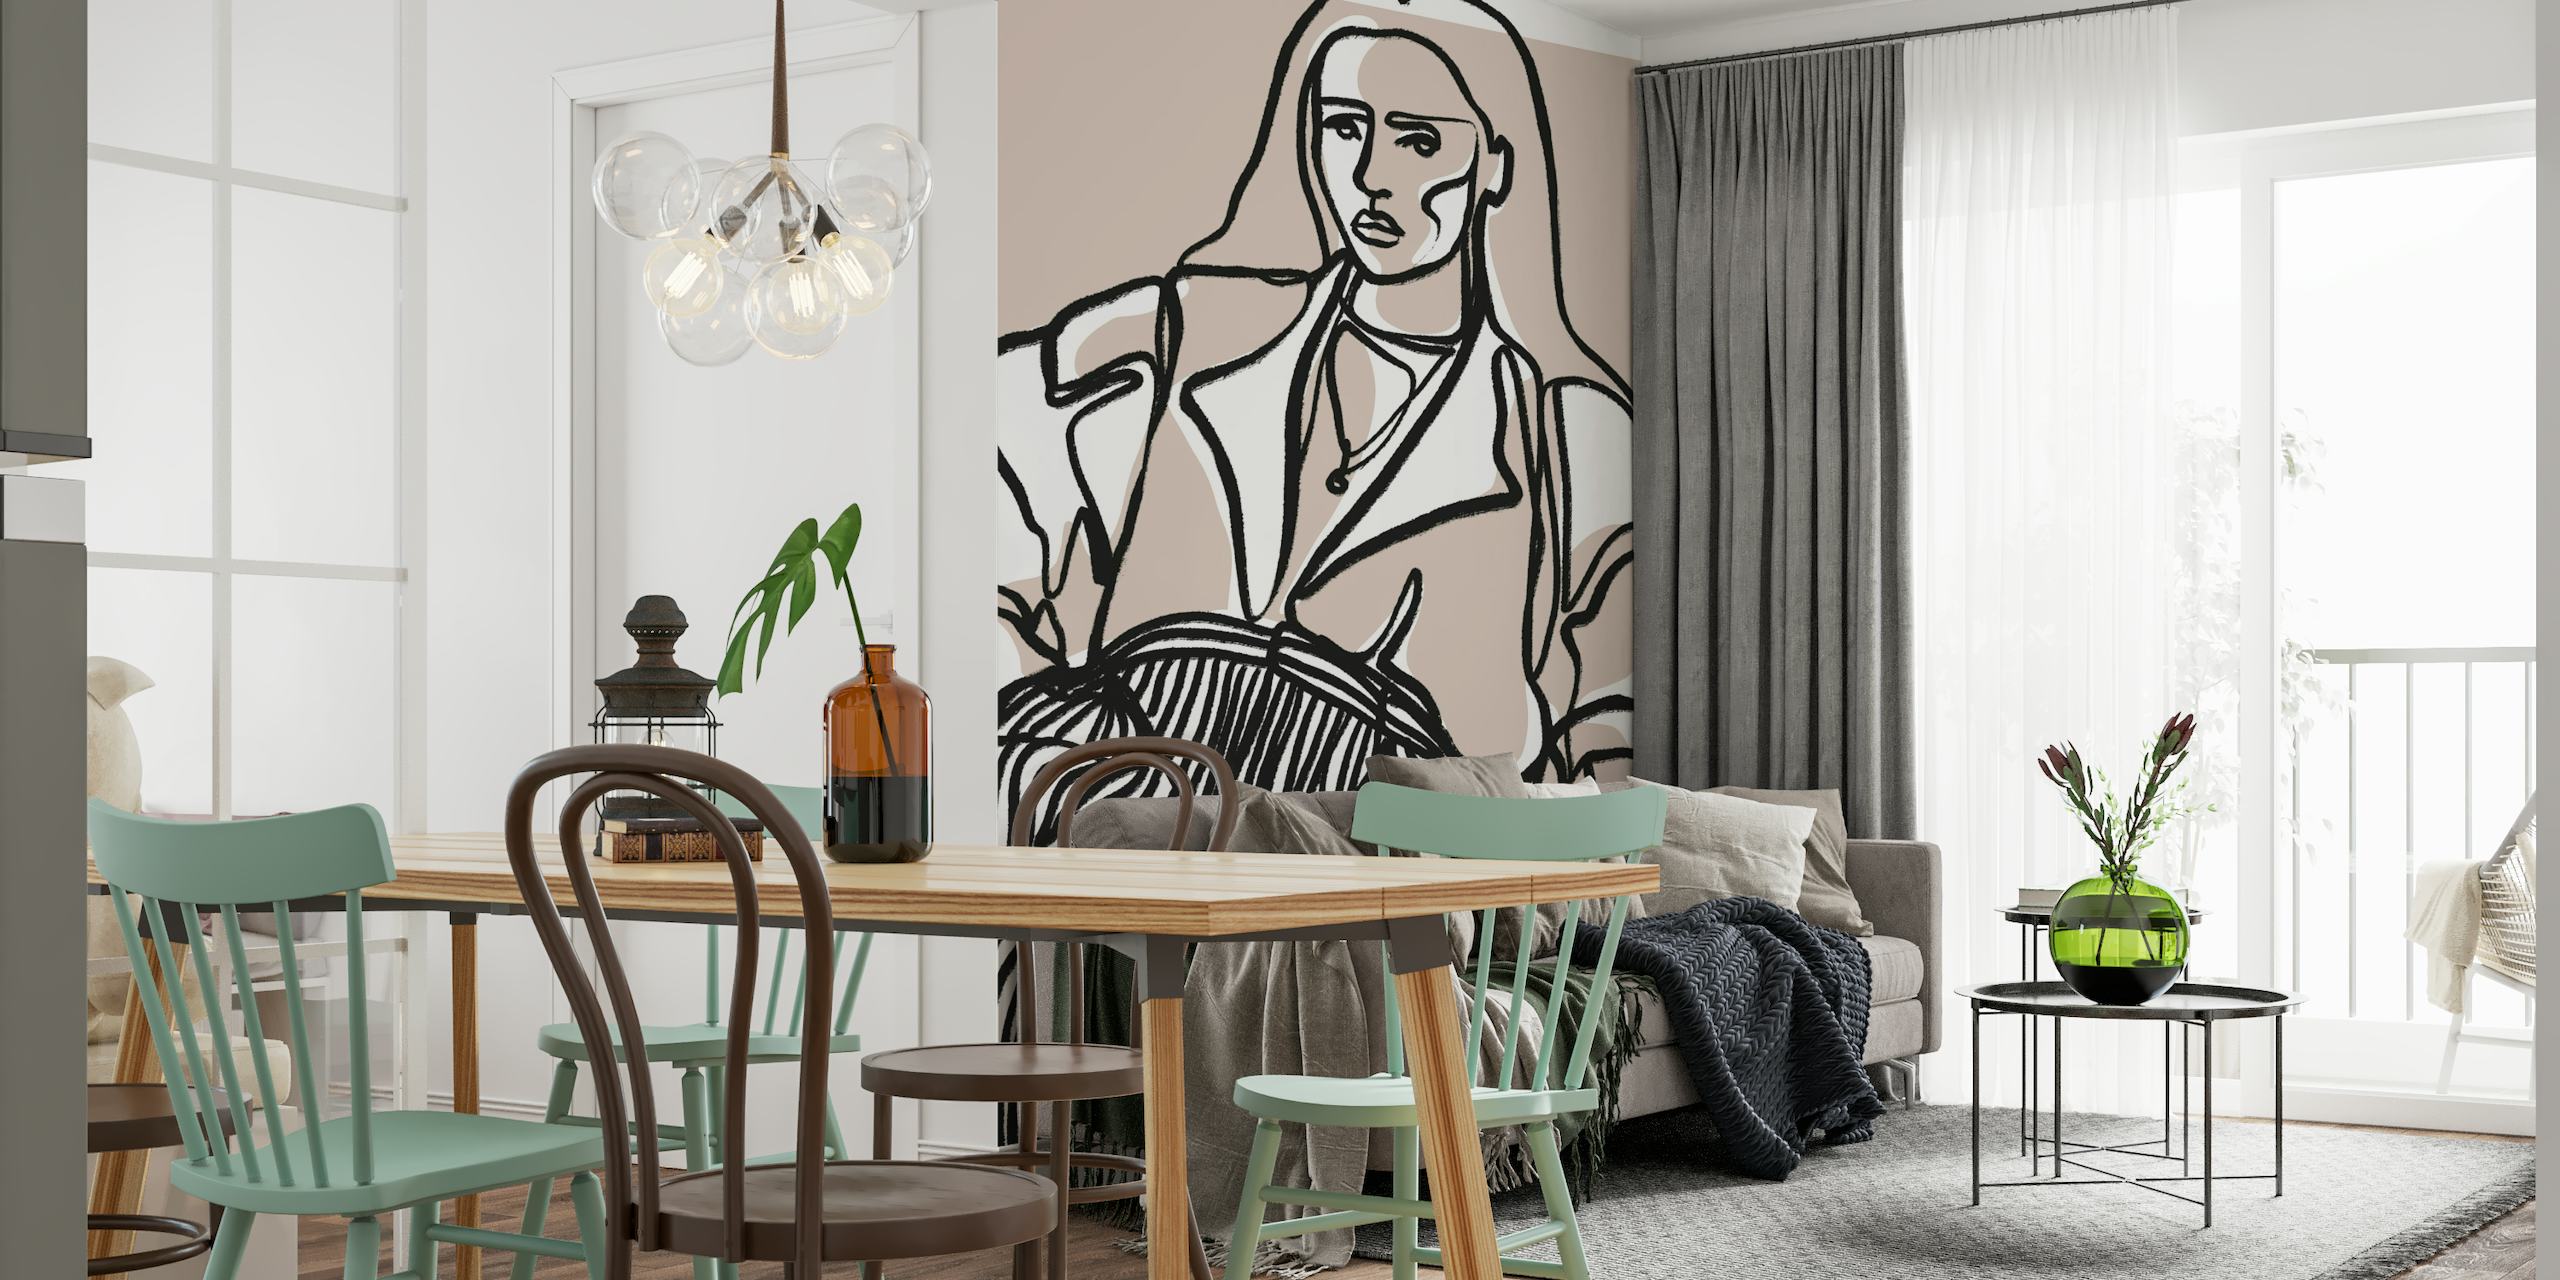 Wandbild mit Linienkunst einer nachdenklichen Figur auf taupefarbenem Hintergrund